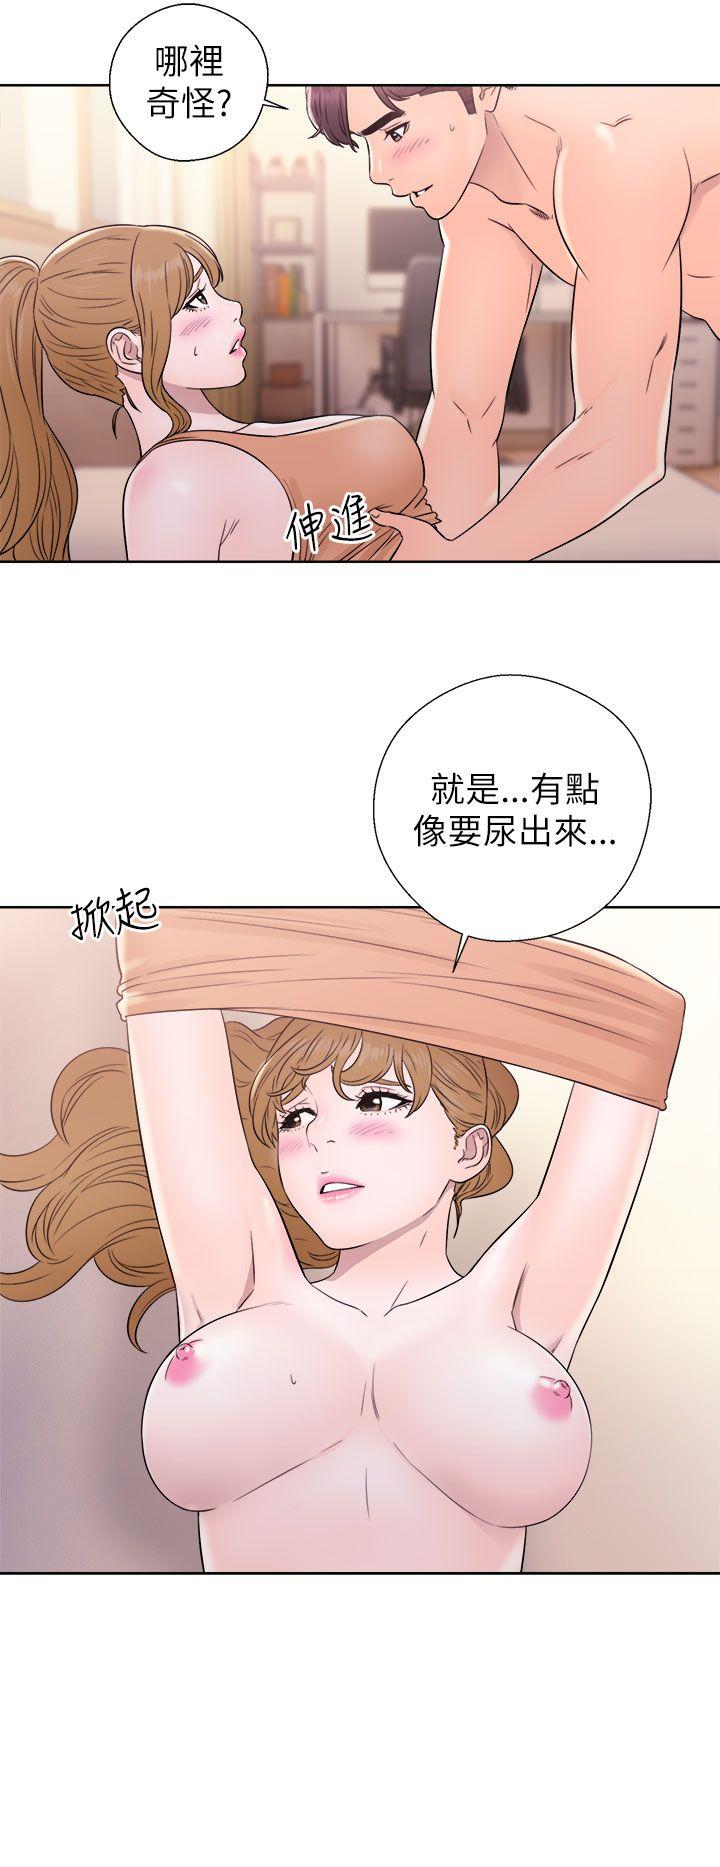 韩国污漫画 青春:逆齡小鮮肉 第11话 34